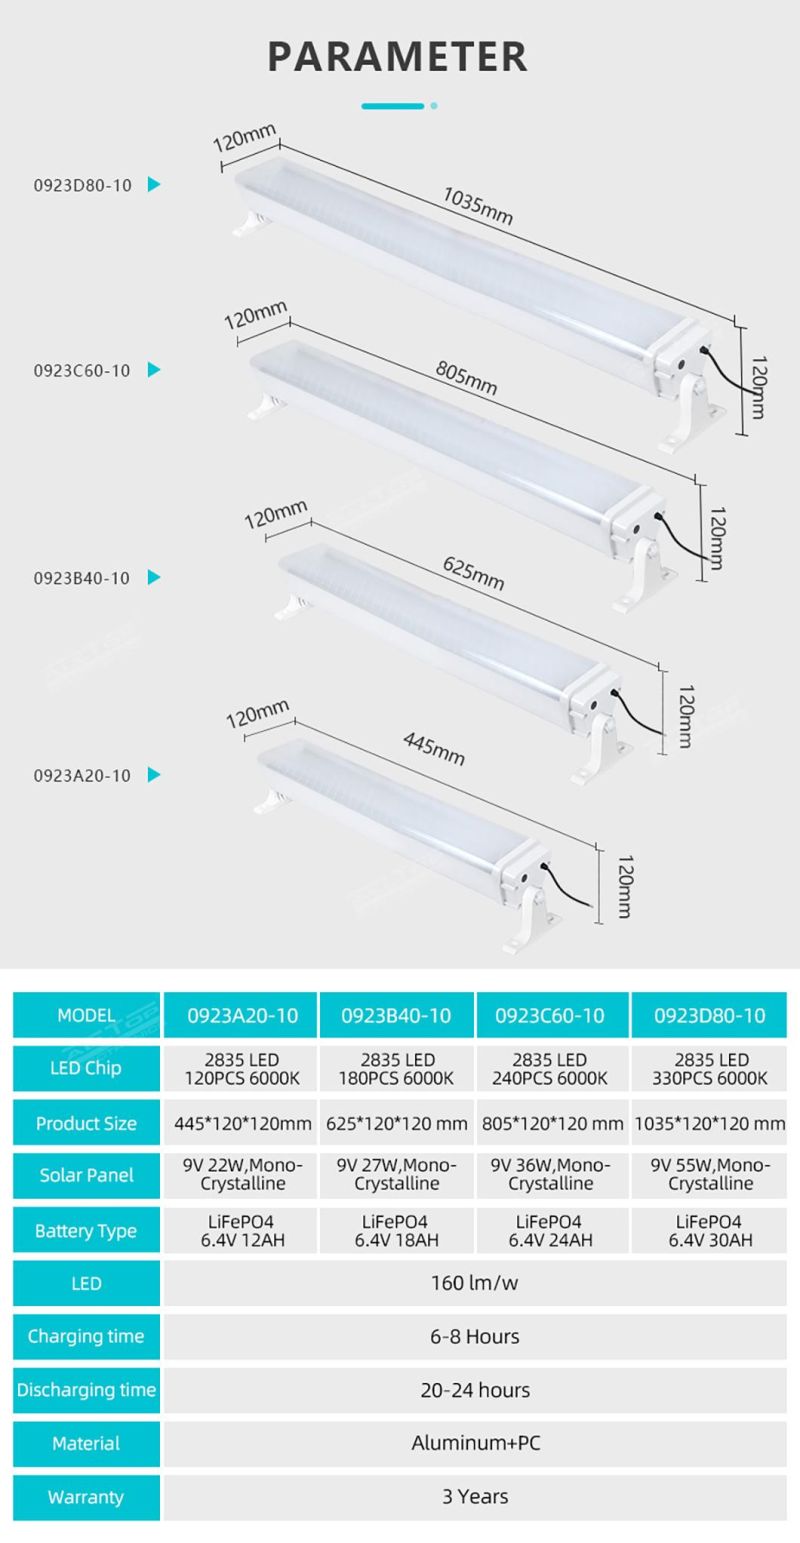 Alltop New Product Adjustable Angle 20 40 60 80 Watt IP65 Waterproof Adjustable Angle LED Solar Tri-Proof Light